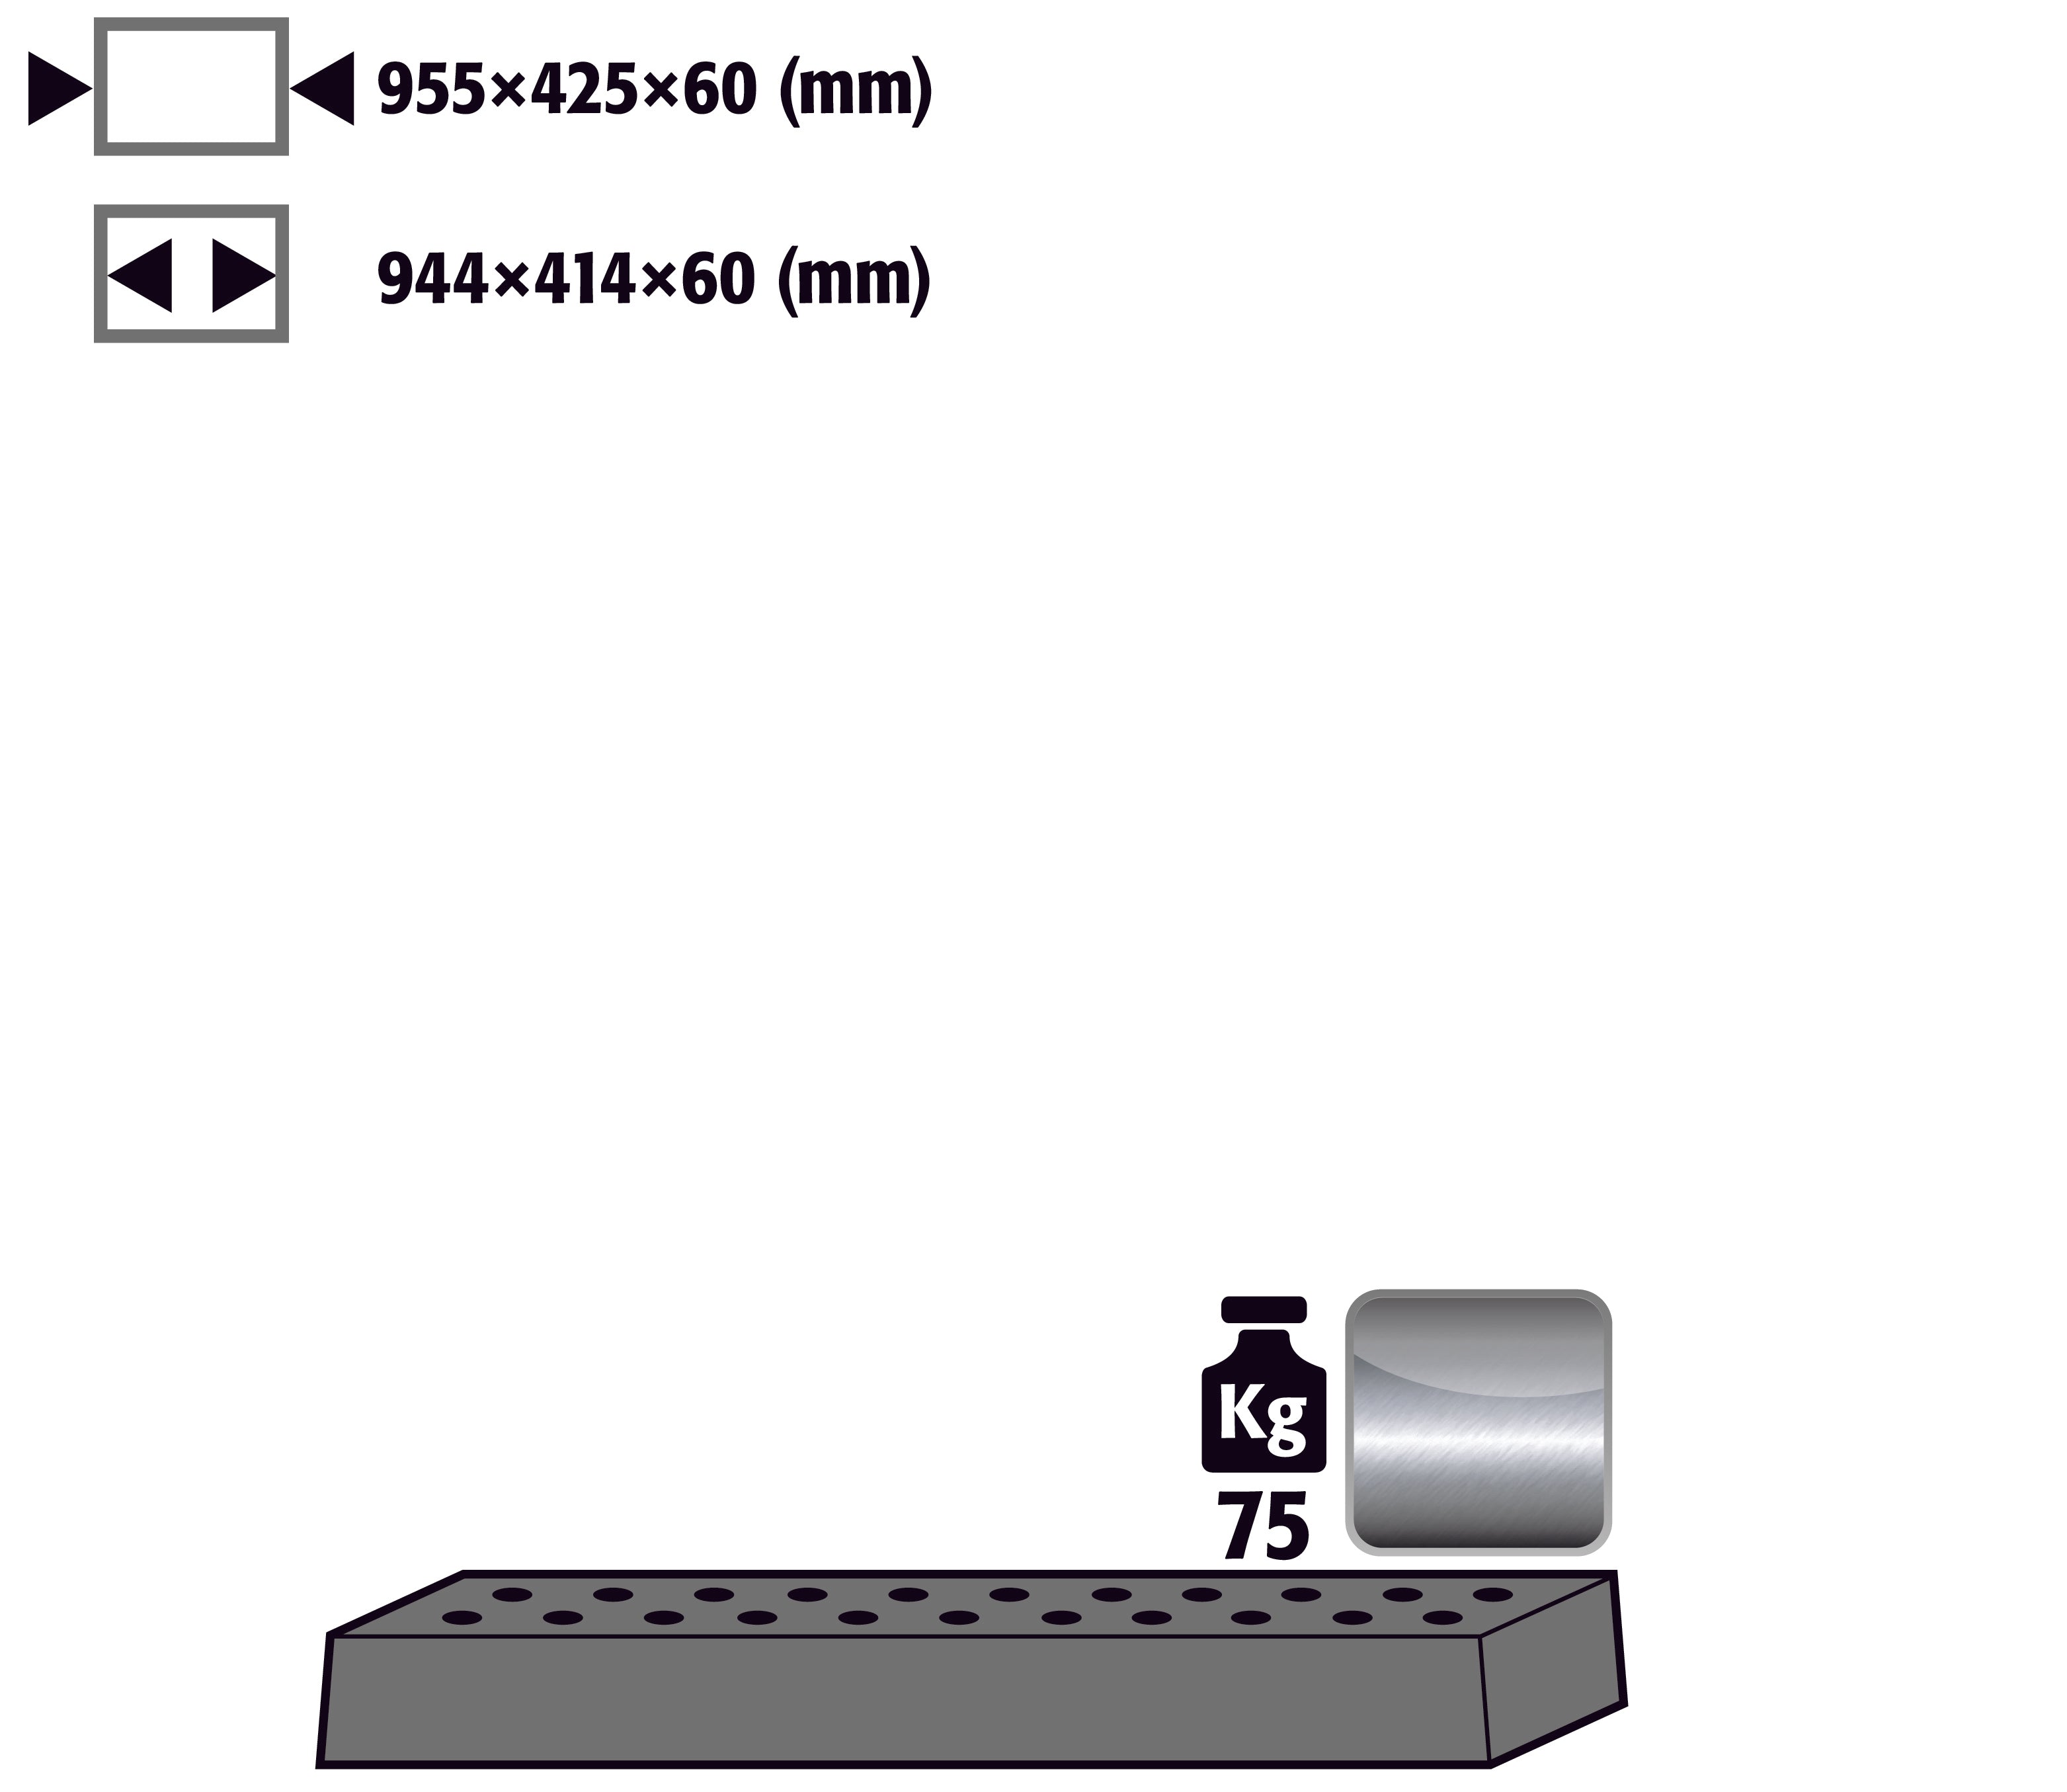 Lochblecheinsatz Standard für Modell(e): UB90, UB30 mit Breite 1100 mm, Edelstahl 1.4301 roh